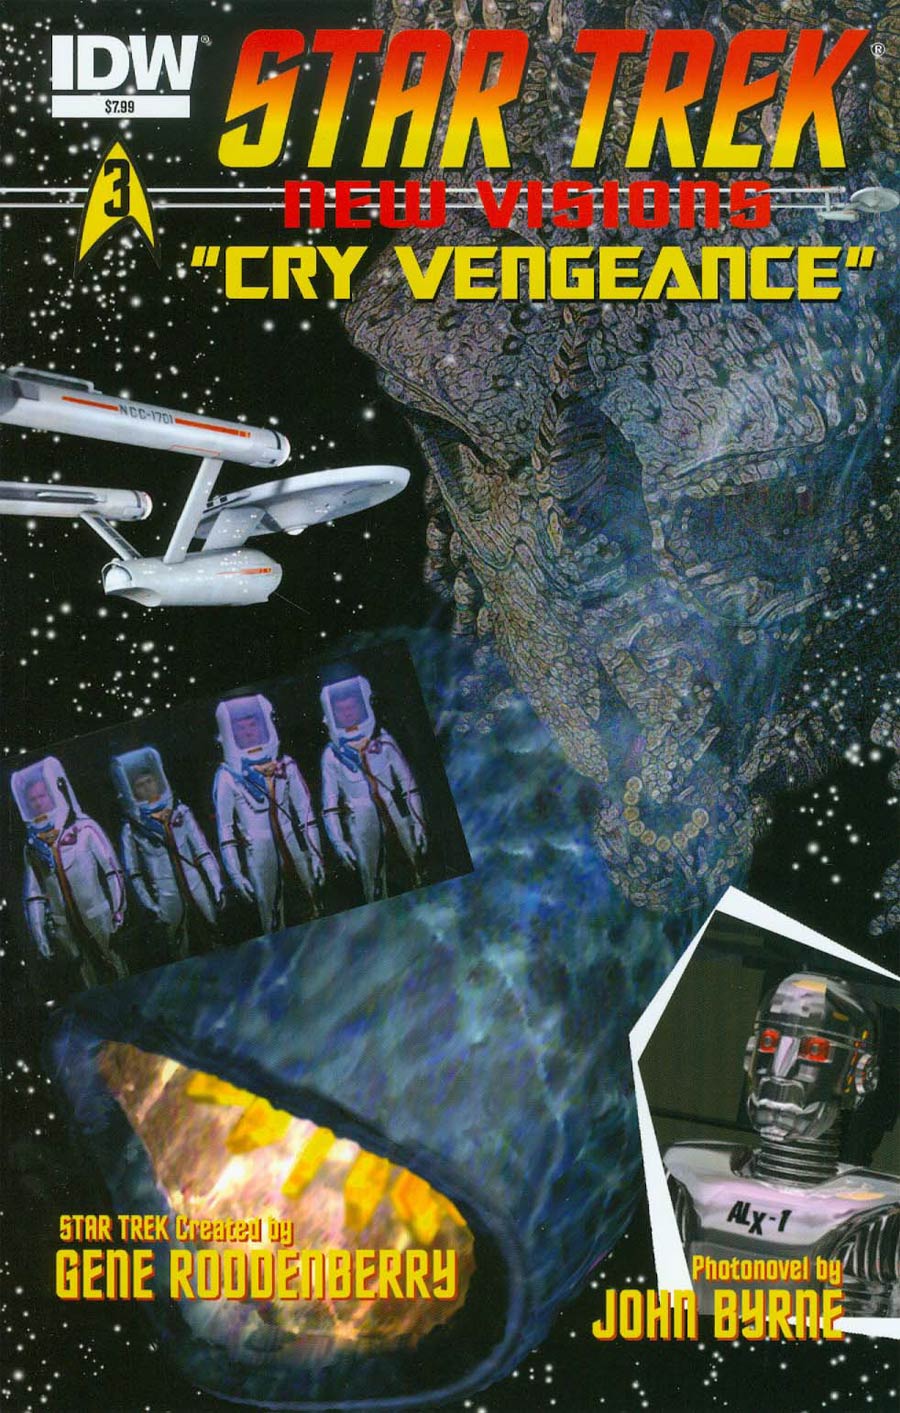 Star Trek New Visions #3 Cry Vengeance